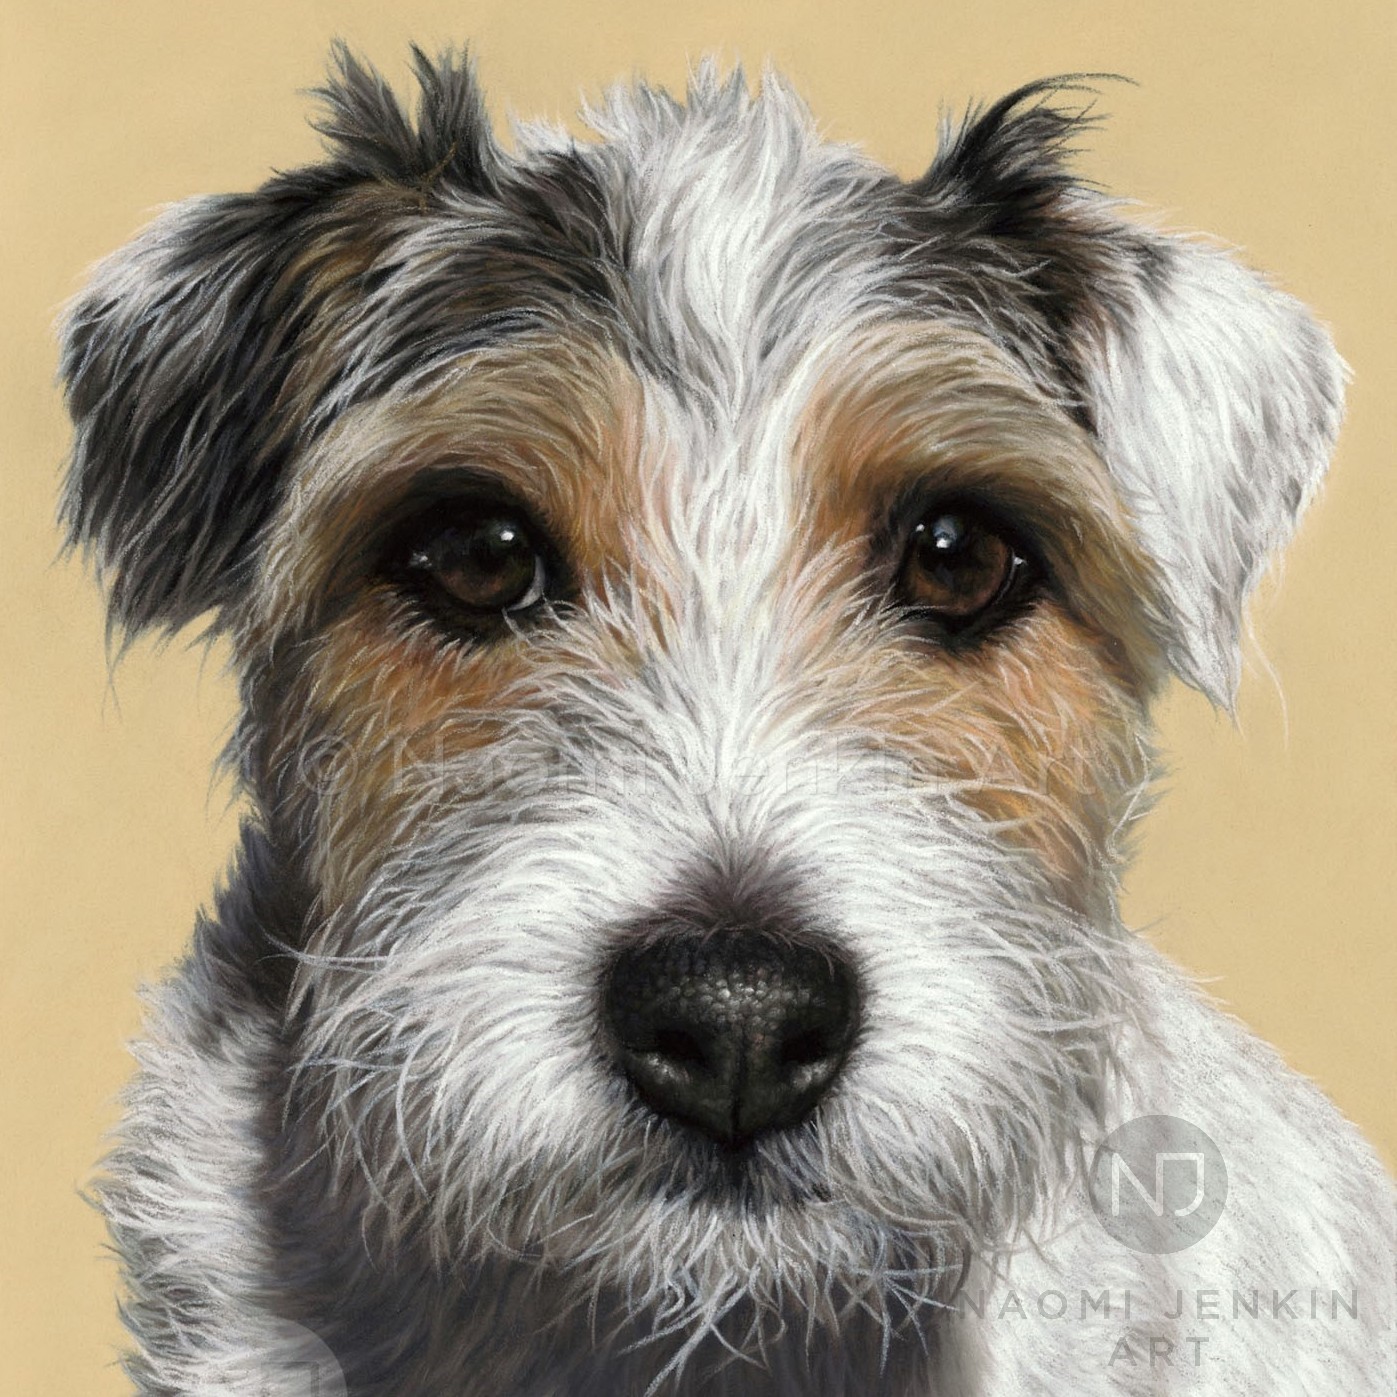 Jack russell terrier dog portrait by pet portrait artist Naomi Jenkin. 